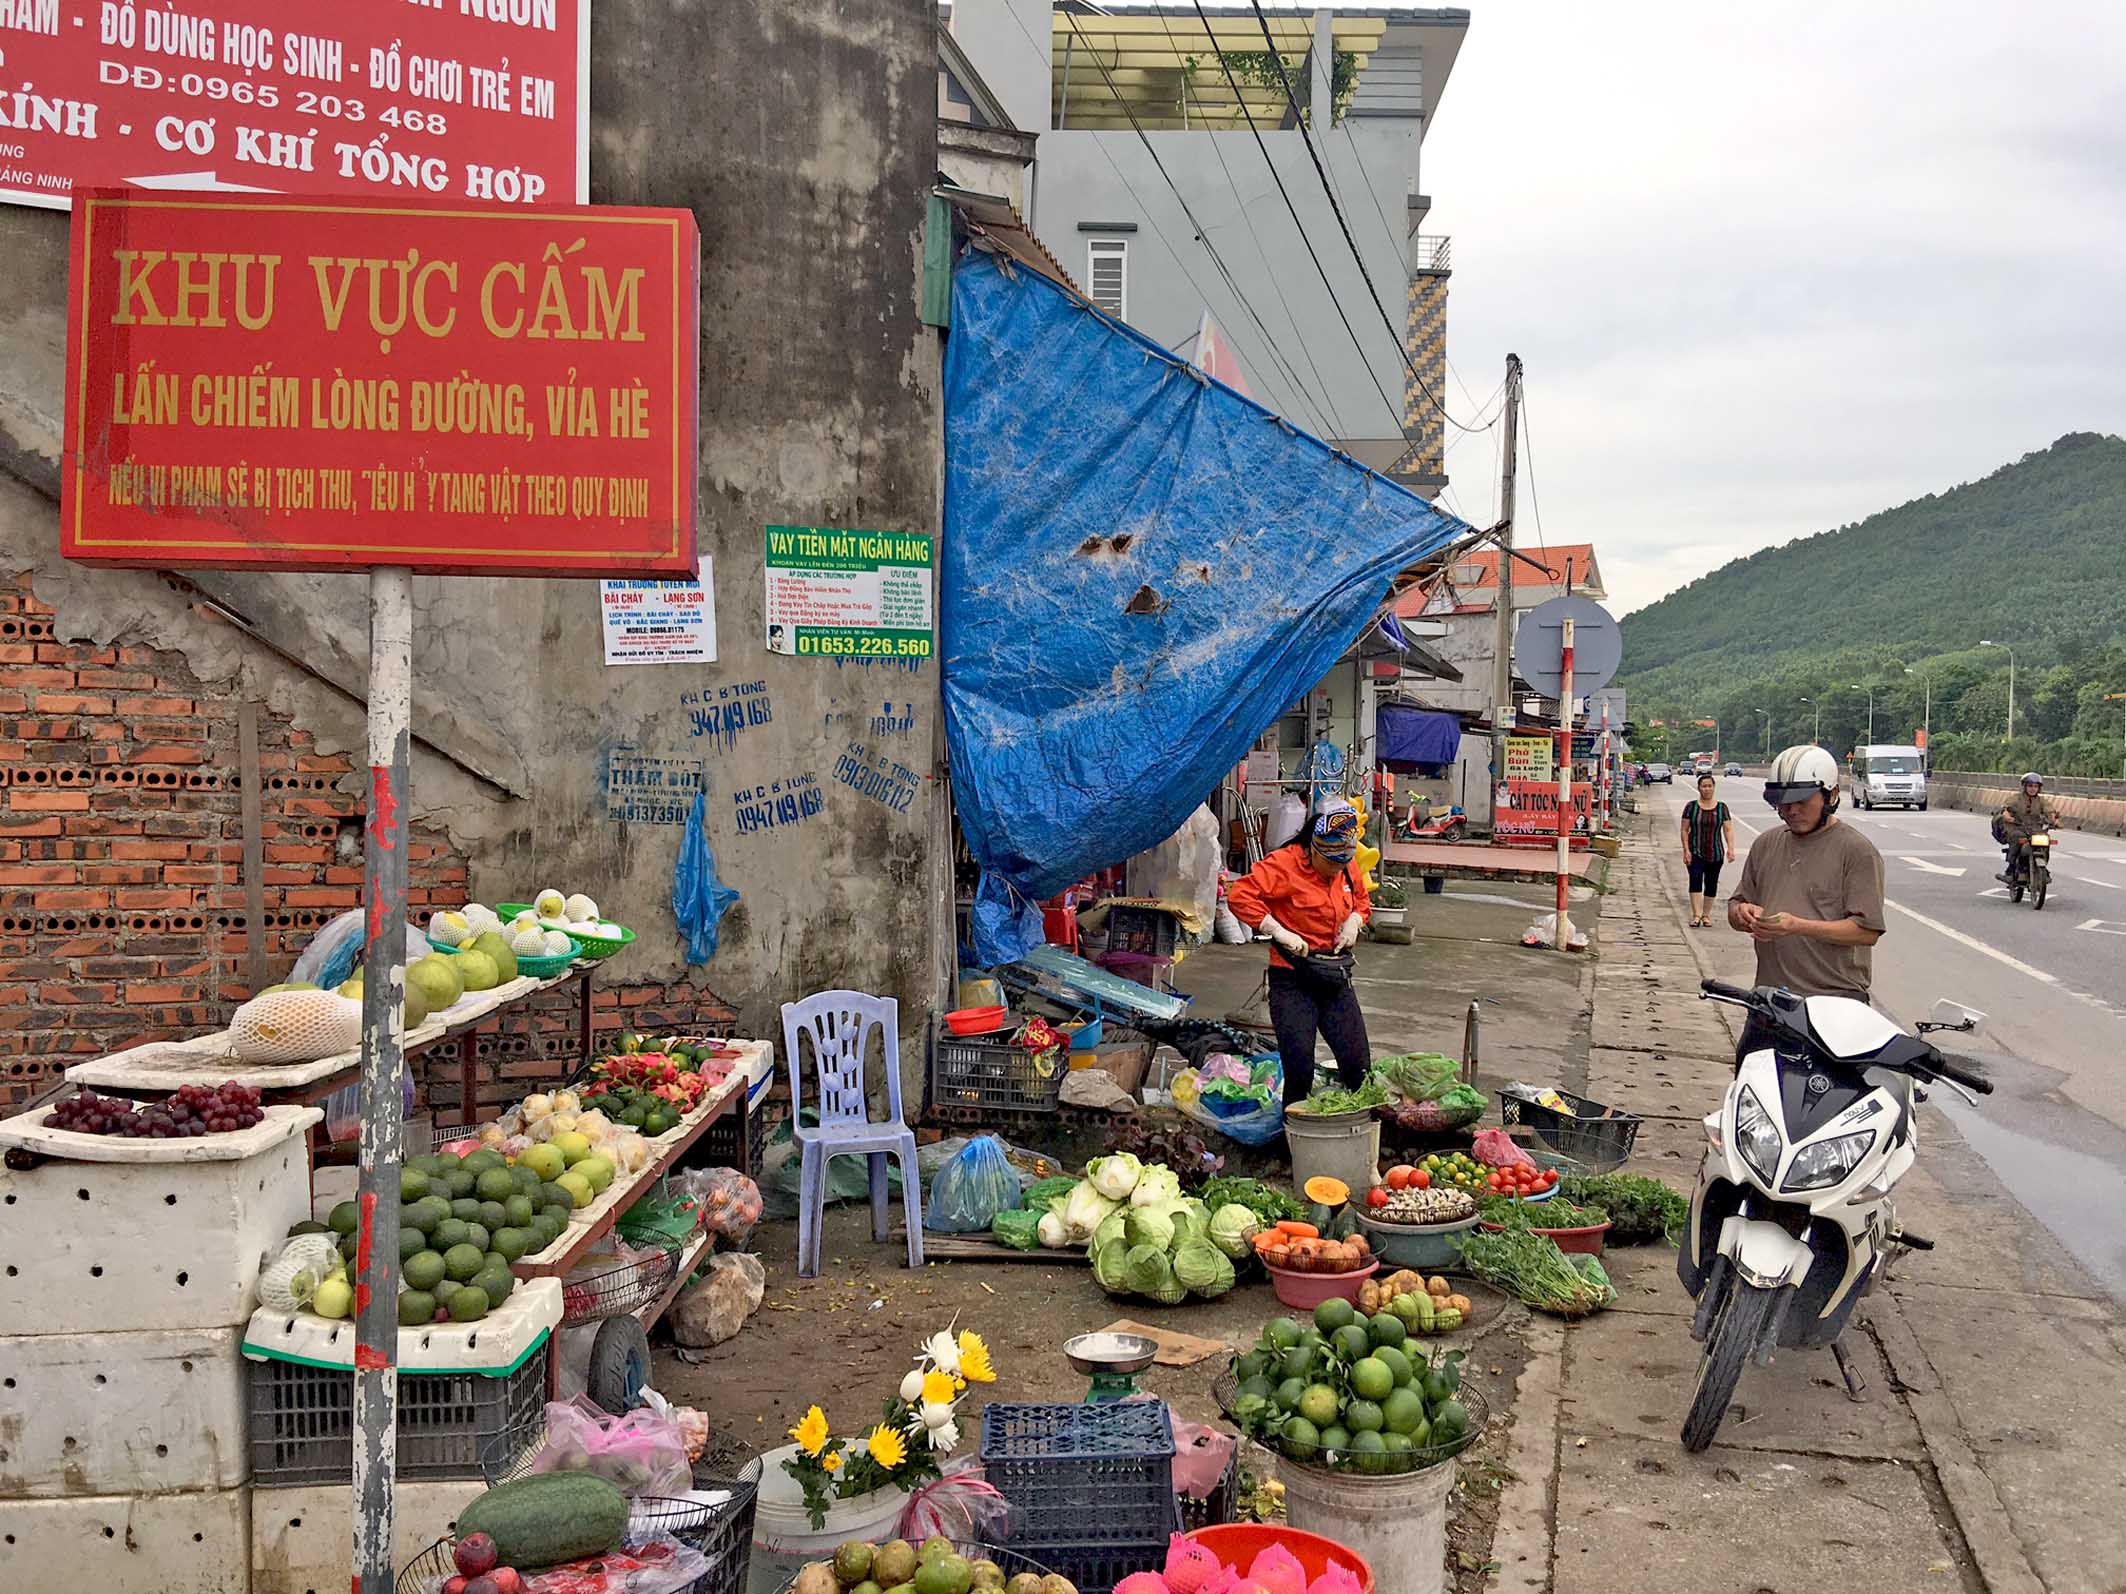 Dù ở đoạn đường qua khu Quỳnh Lưu, phường Đại Yên, TP Hạ Long có biển cấm, nhưng tình trạng lấn chiếm vỉa hè, lòng đường vẫn diễn ra.